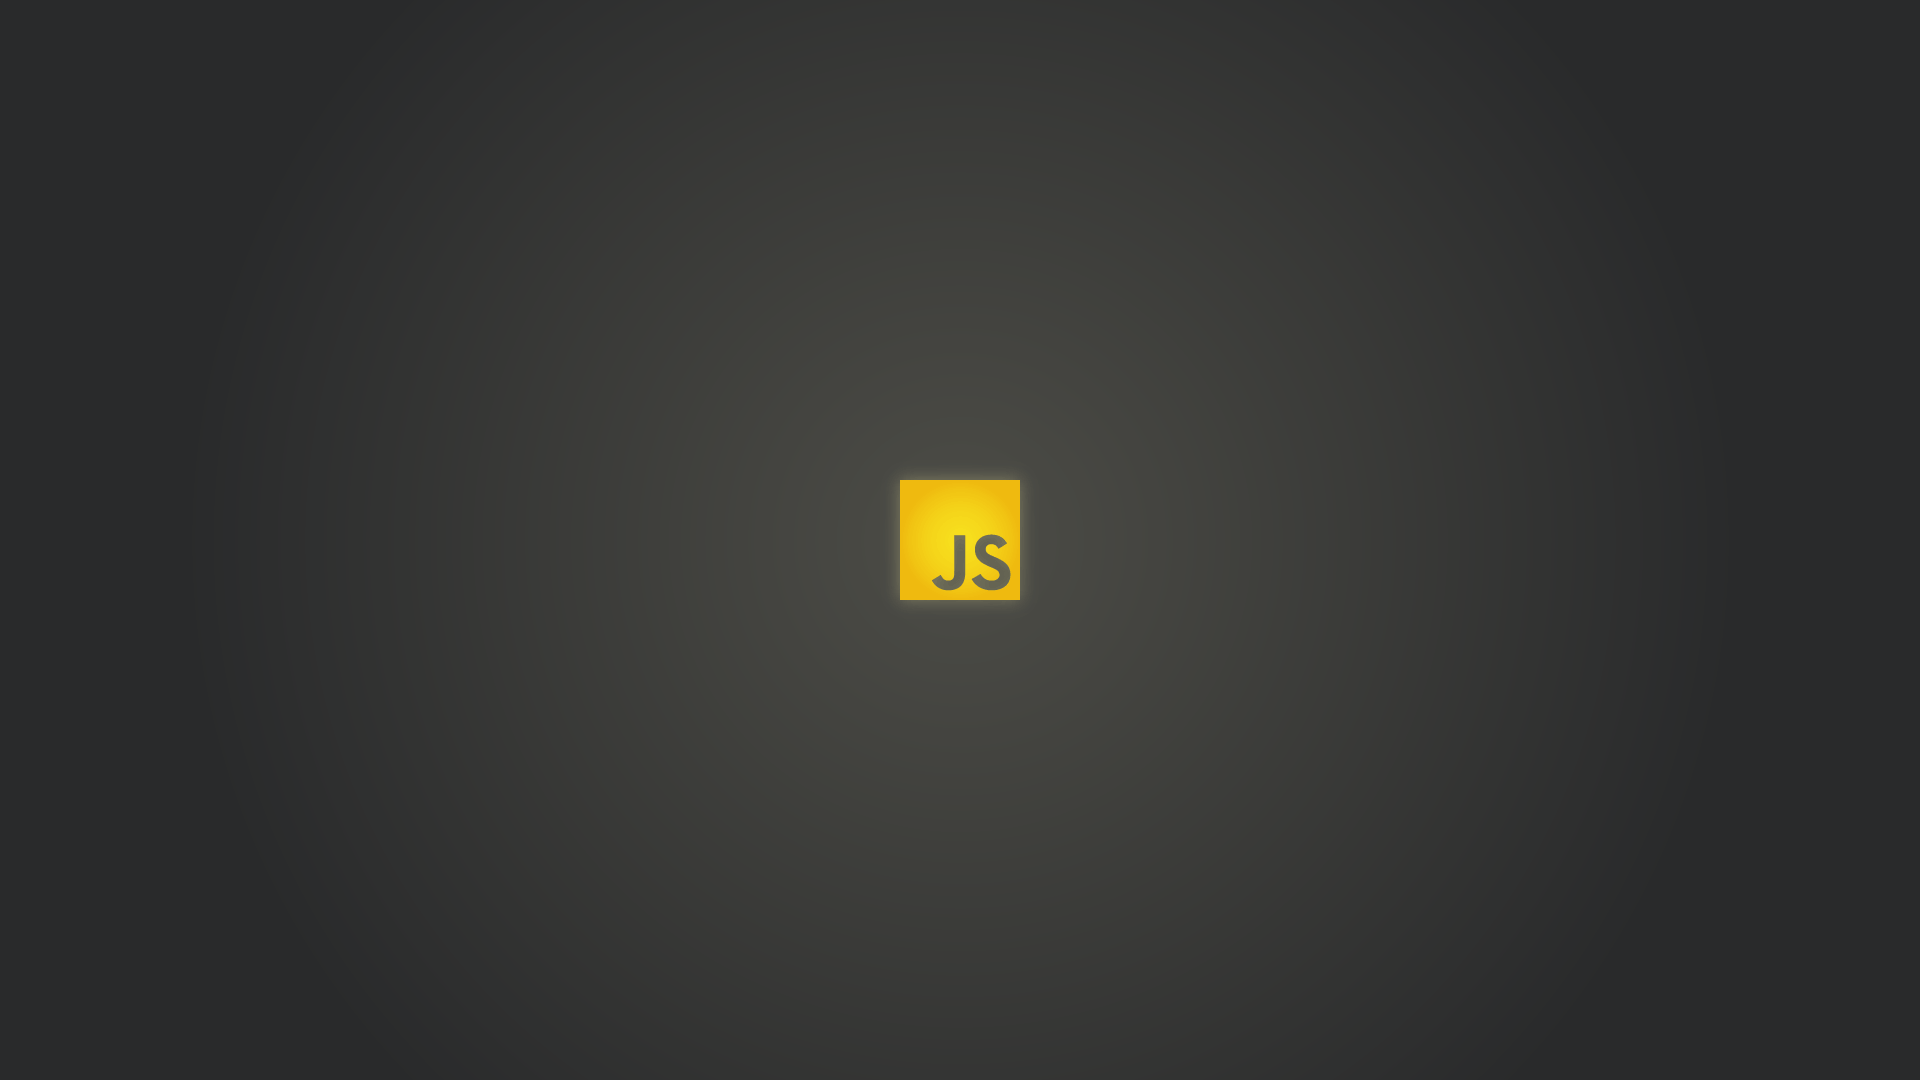 Wallpaper, programmers, JavaScript, minimalism 1920x1080